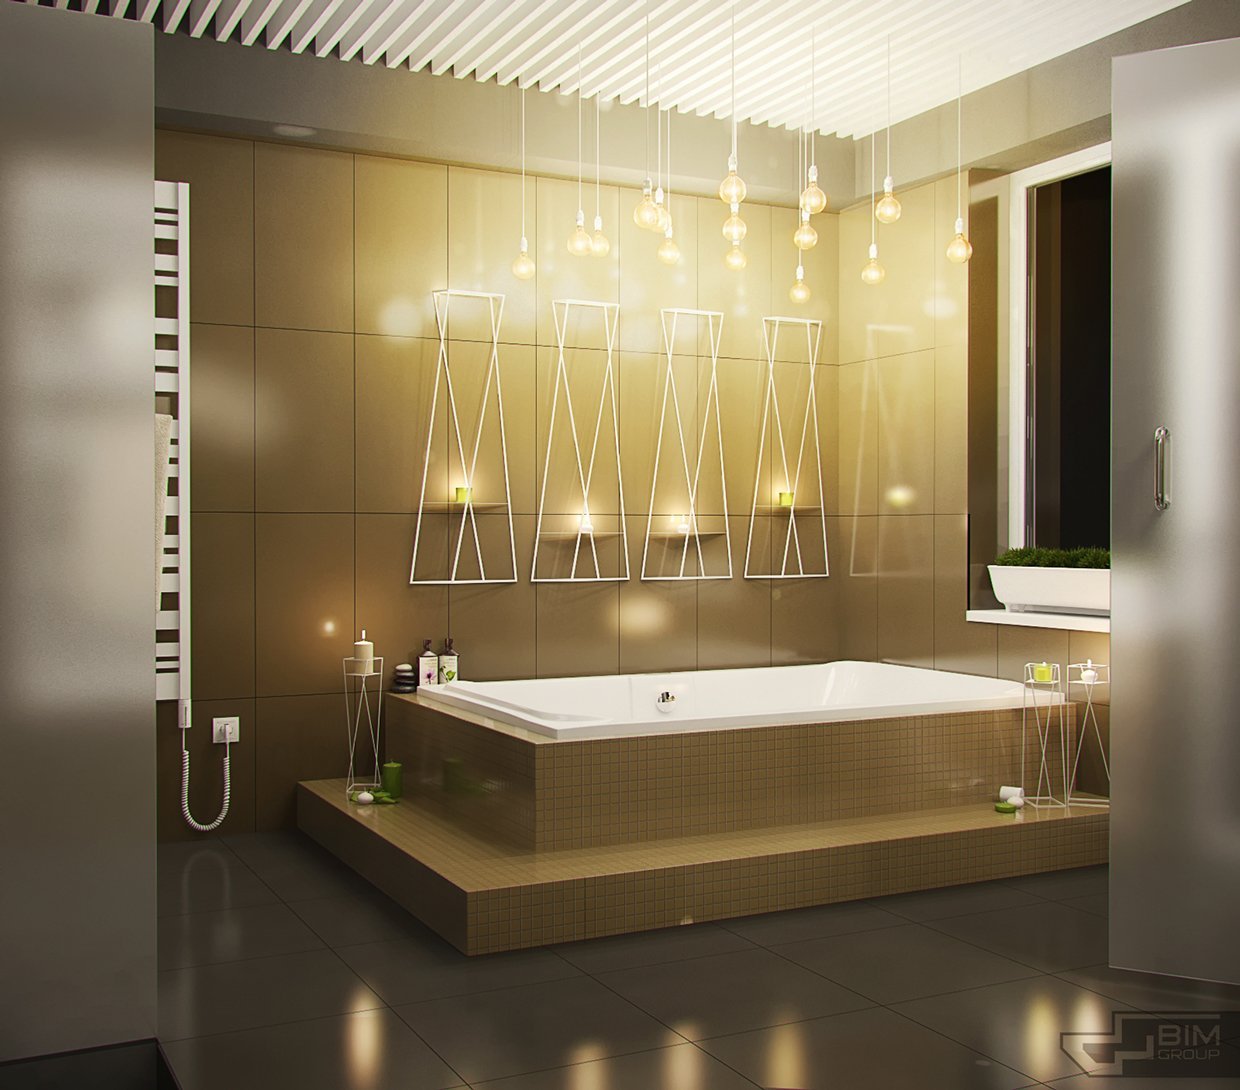 Светодиодные светильники для ванной комнаты. Освещение в ванной. Светильник для ванной. Подсветка в ванной. Светильник над ванной.